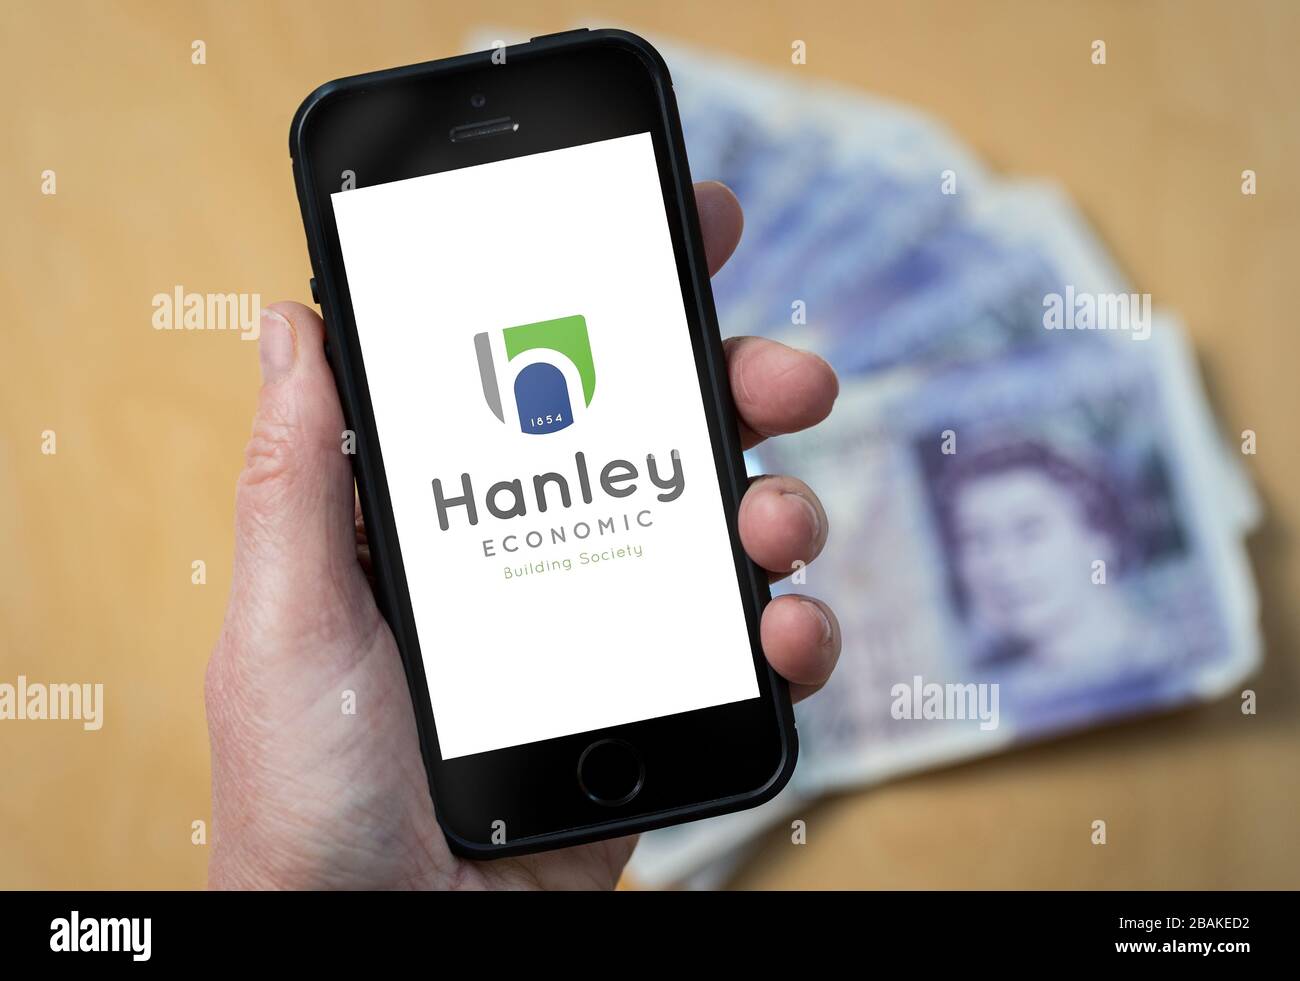 Eine Frau, die ein Mobiltelefon hält und Hanley Economic Building Society zeigt (nur redaktionelle Verwendung) Stockfoto